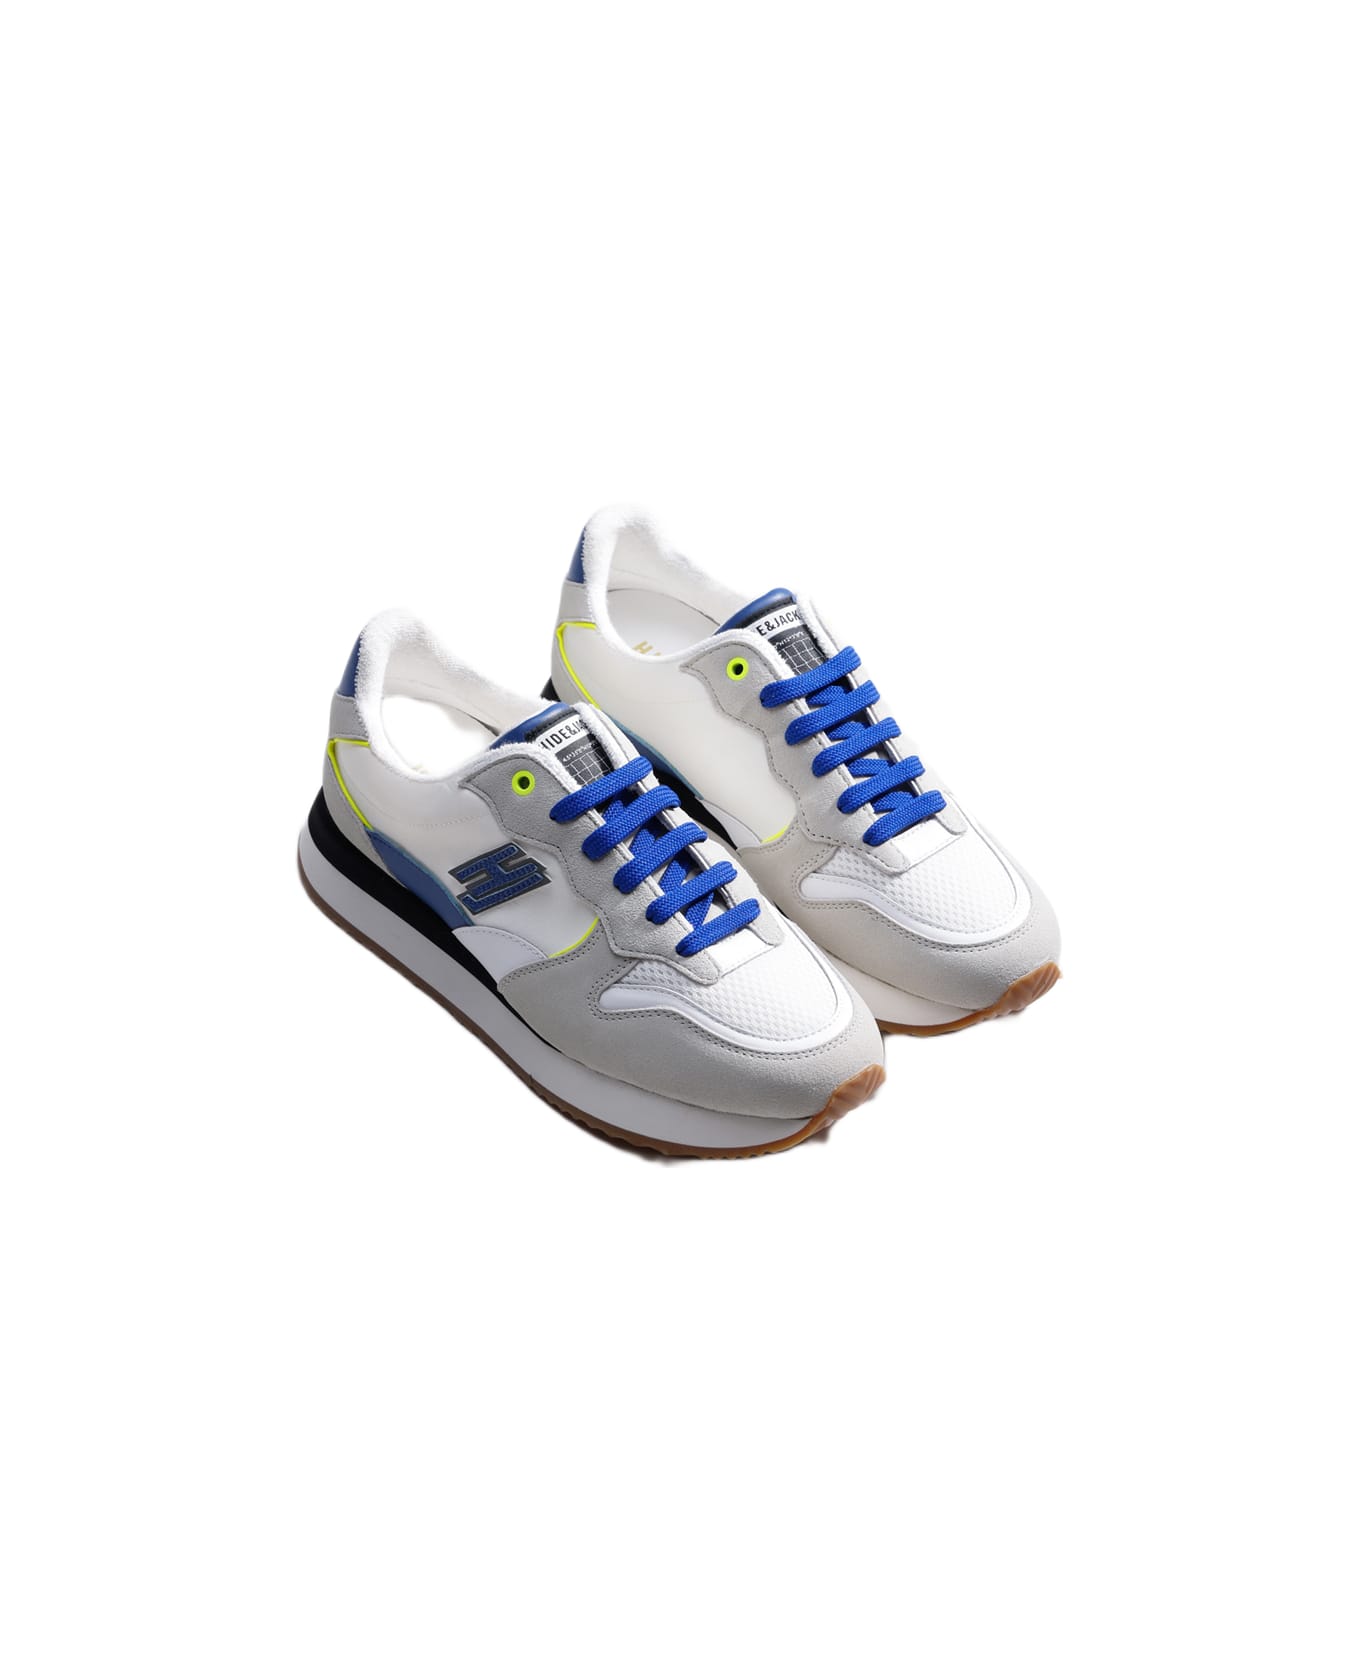 Hide&Jack Low Top Sneaker - Over Blue Yellow スニーカー